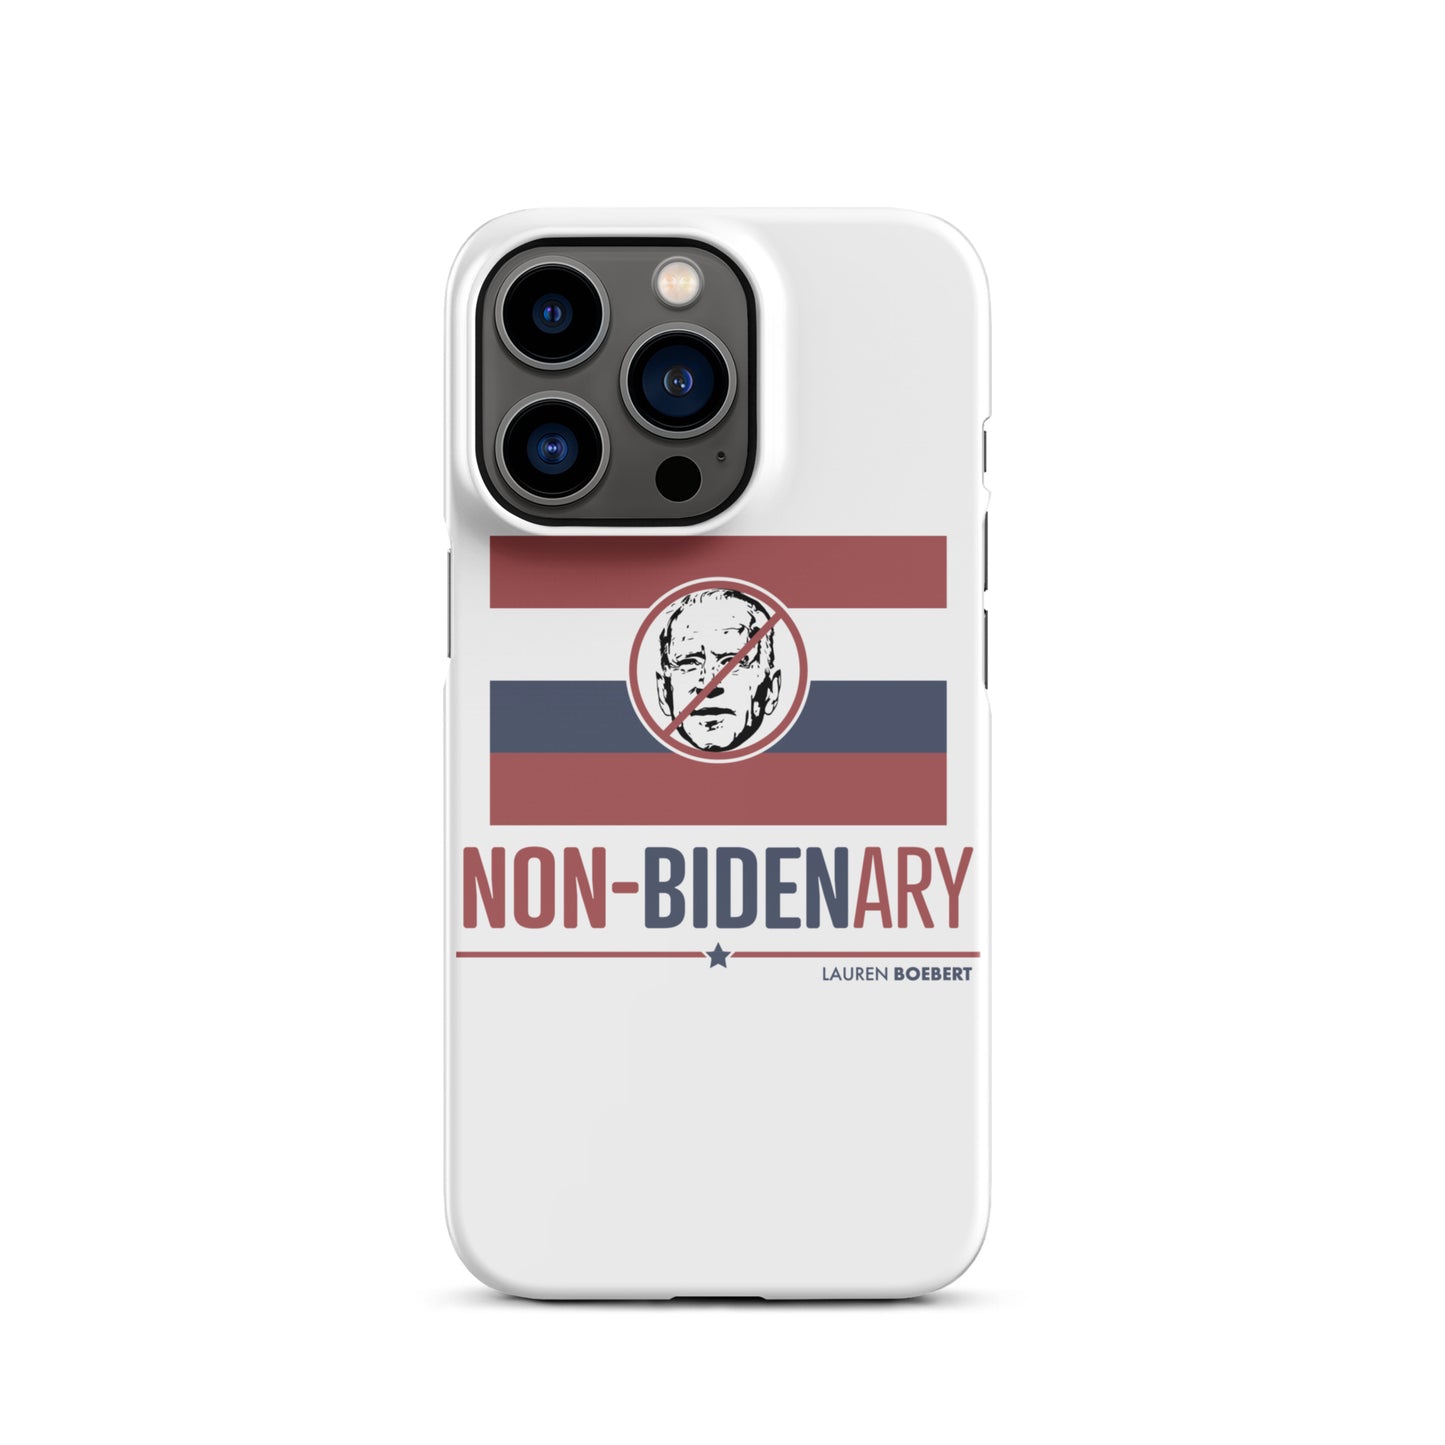 Non-Bidenary iPhone Case